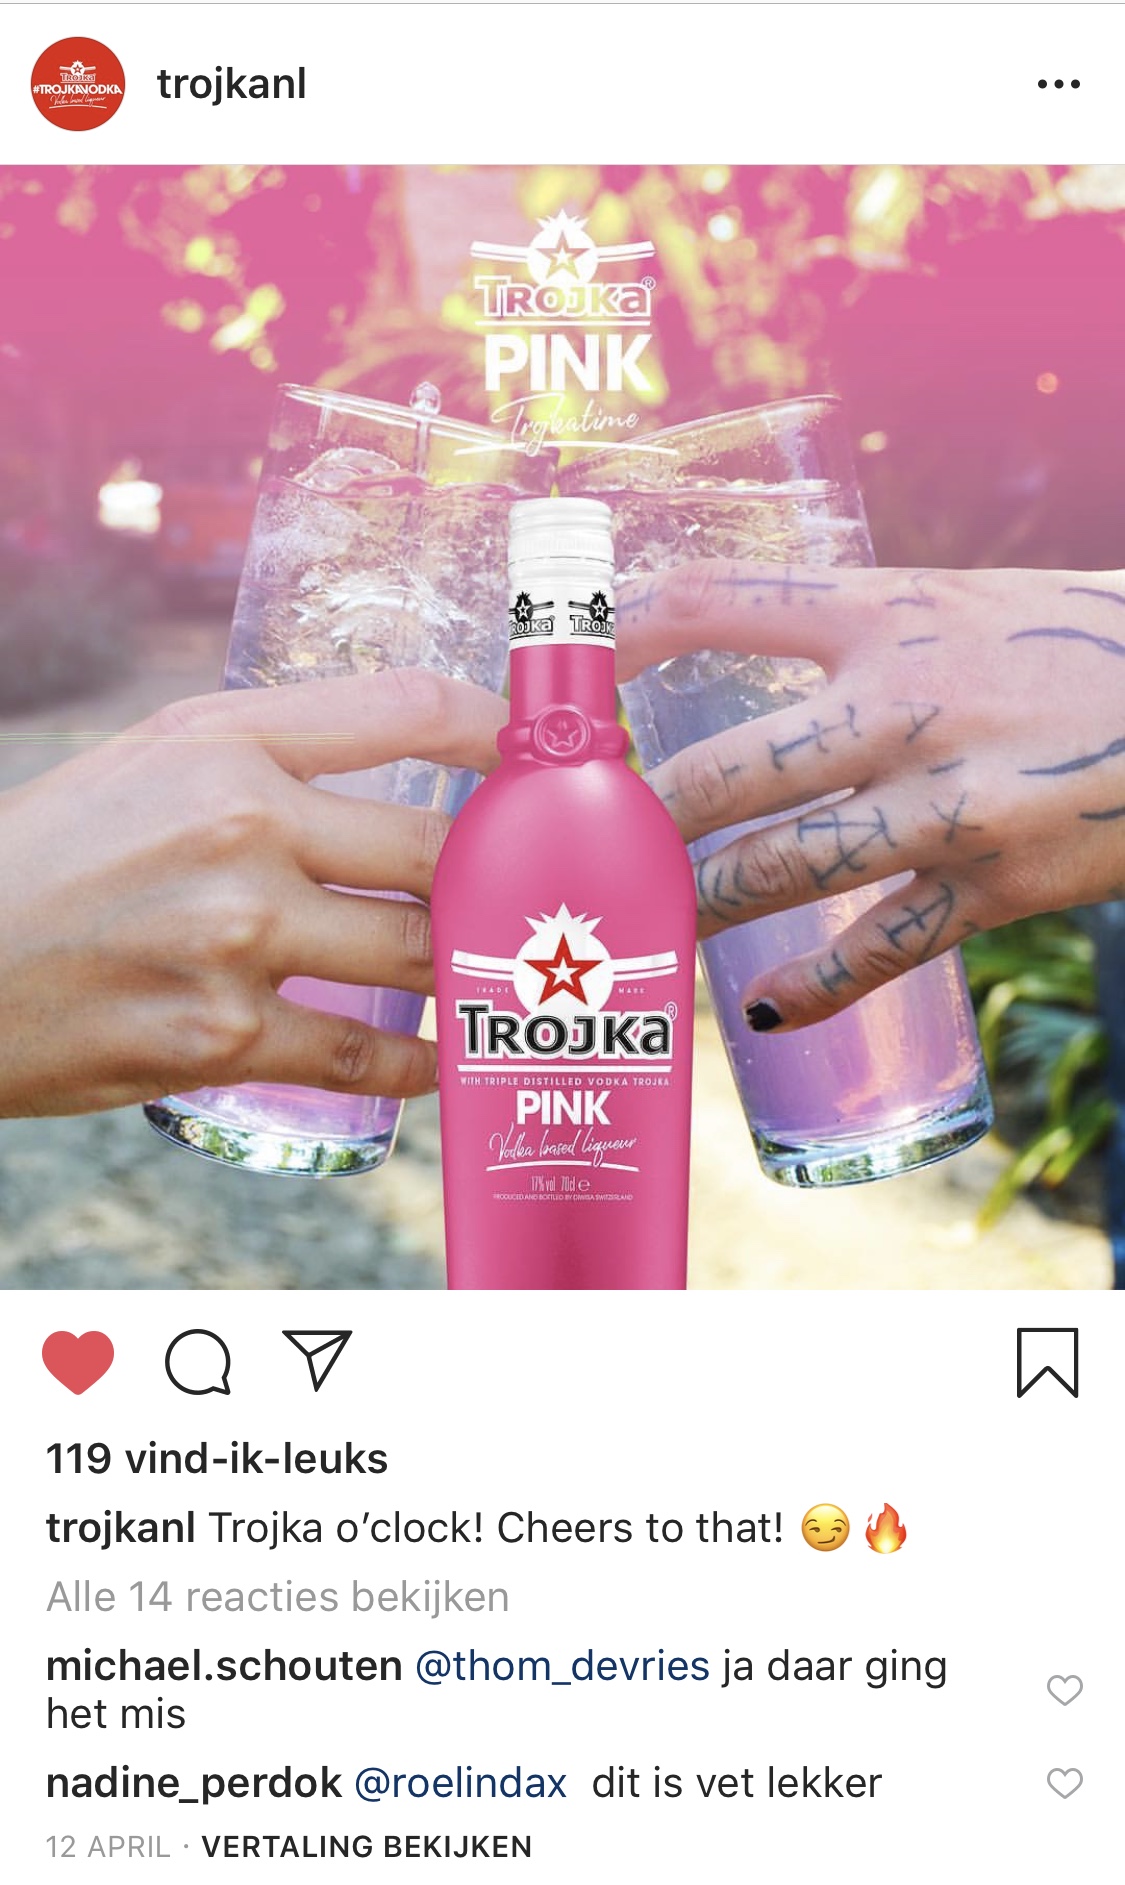 trojka vodka pink